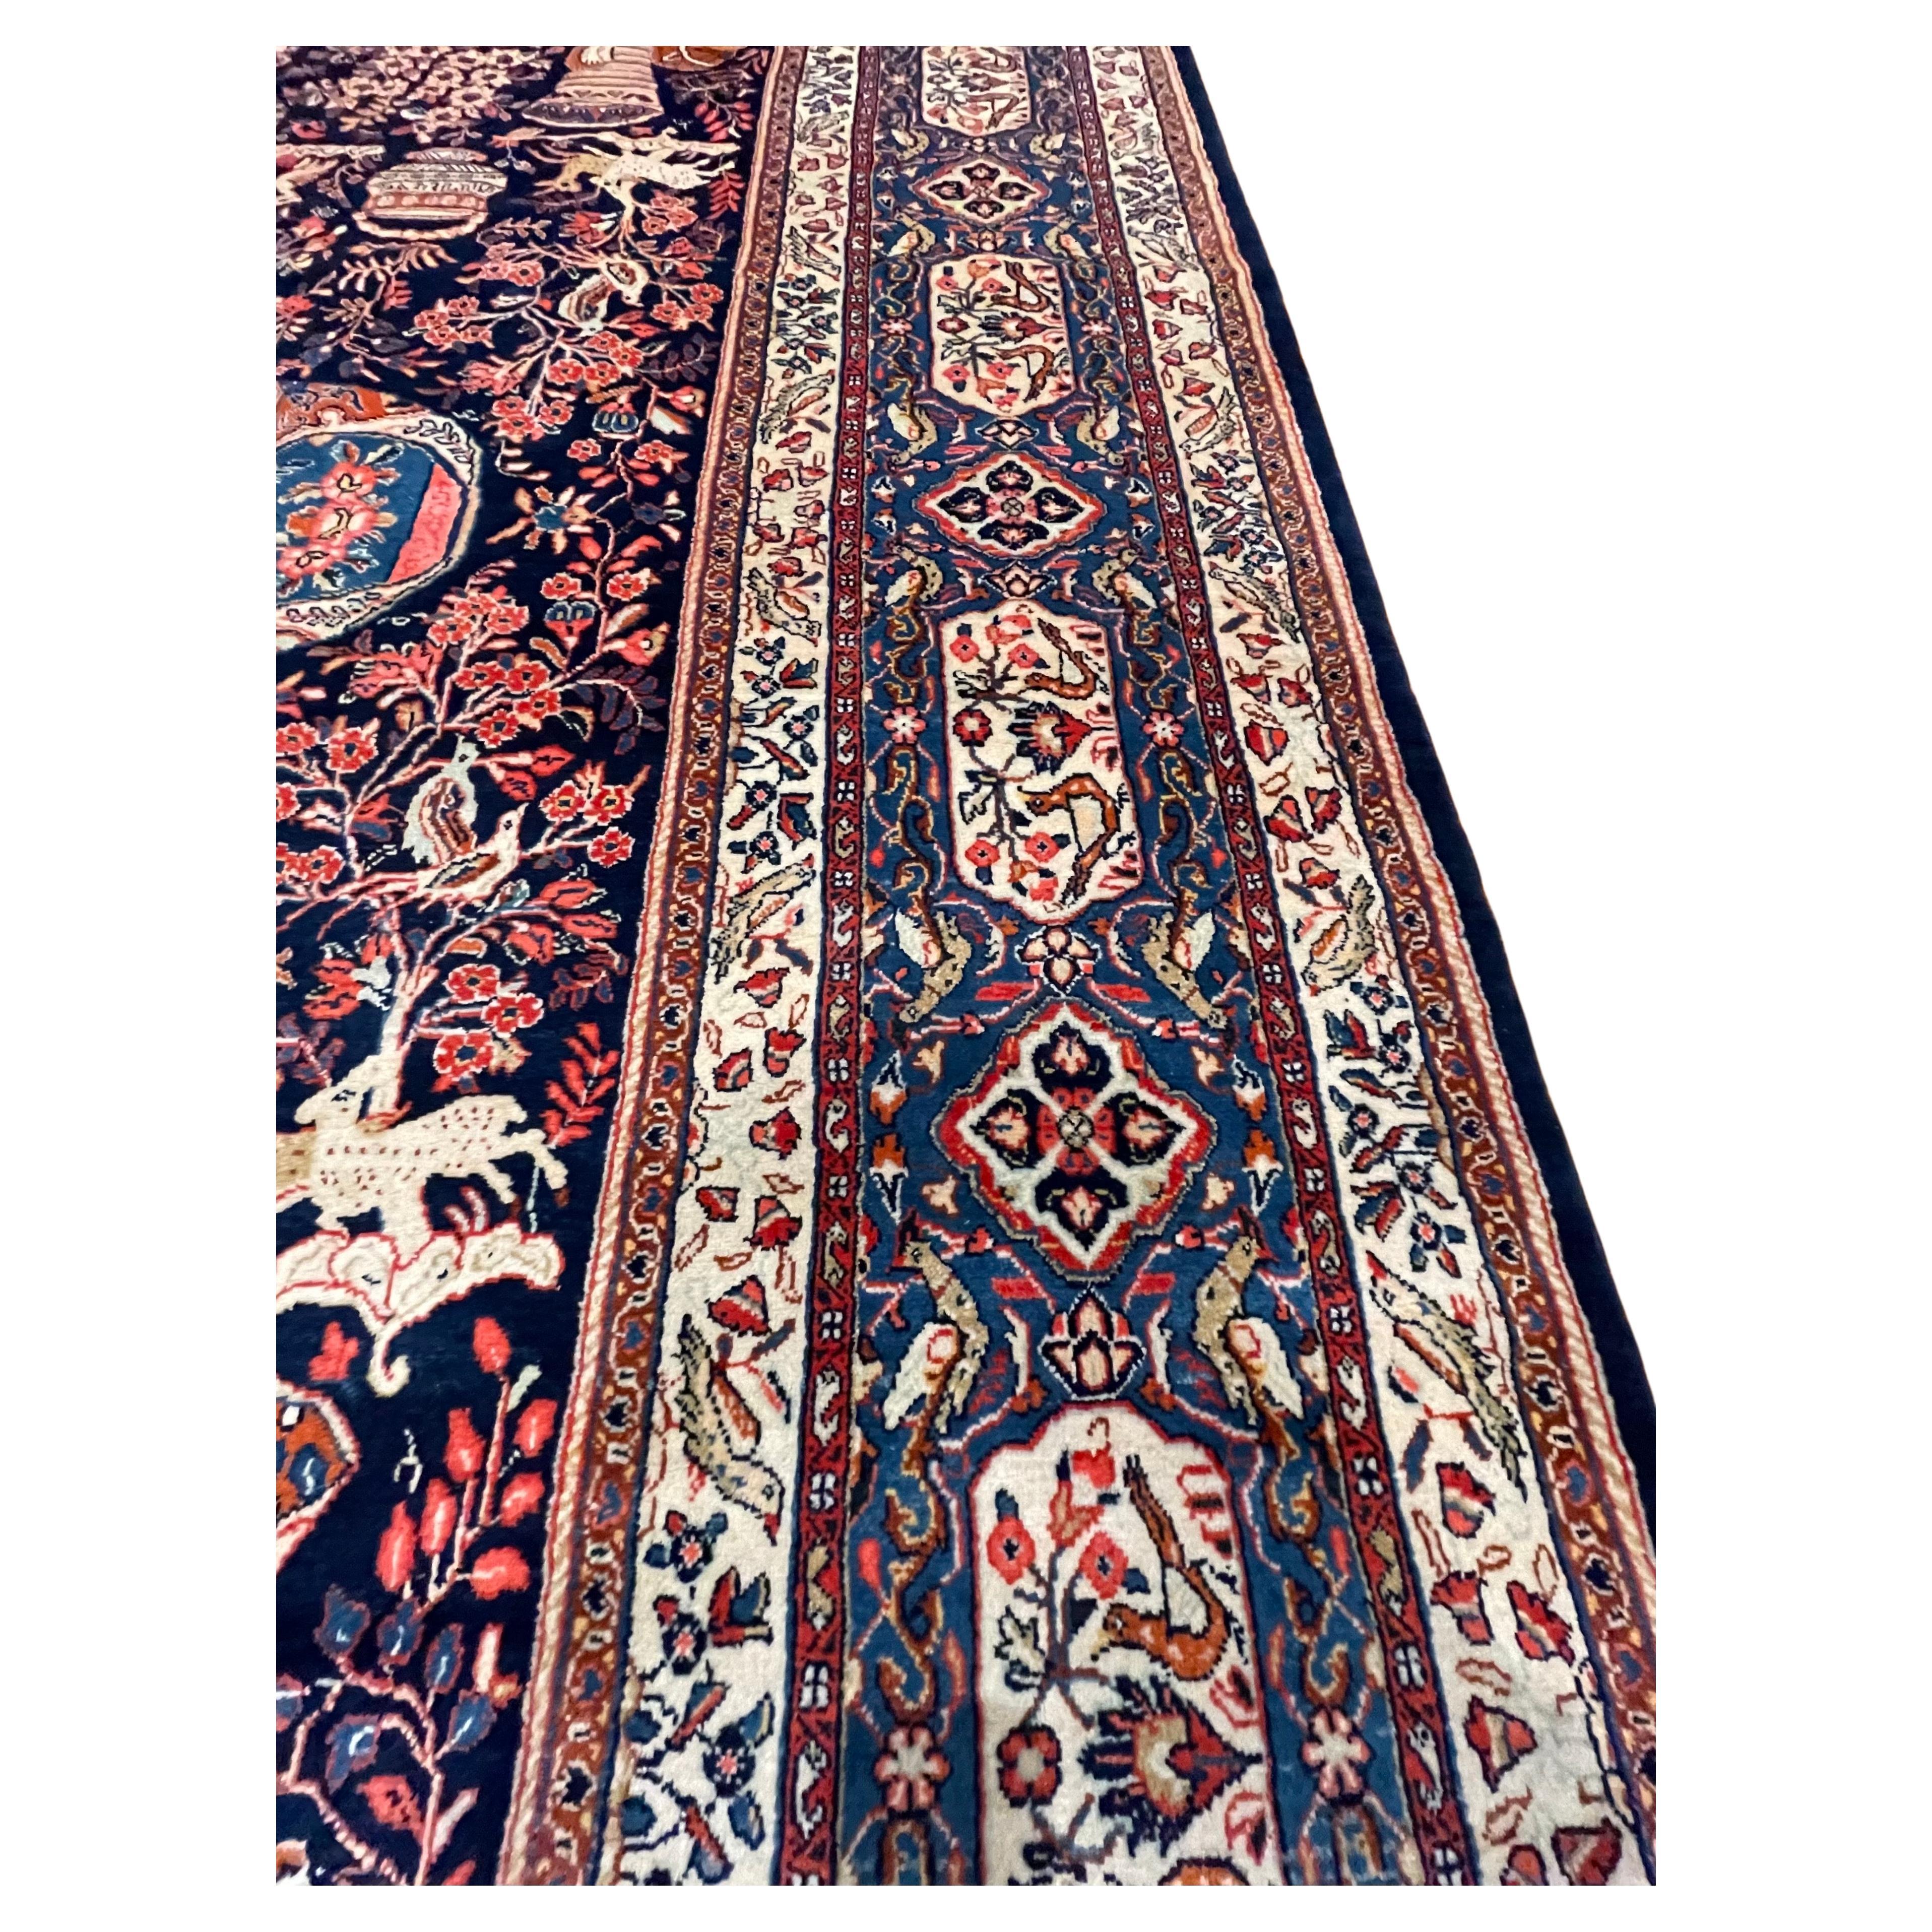 Dieser authentische, handgeknüpfte persische Sarouk-Teppich verkörpert die zeitlose Schönheit und die feine Handwerkskunst, die die persische Teppichtradition ausmachen, und ist ein exquisites Kunstwerk. Der Flor dieses Sarouk-Teppichs besteht aus